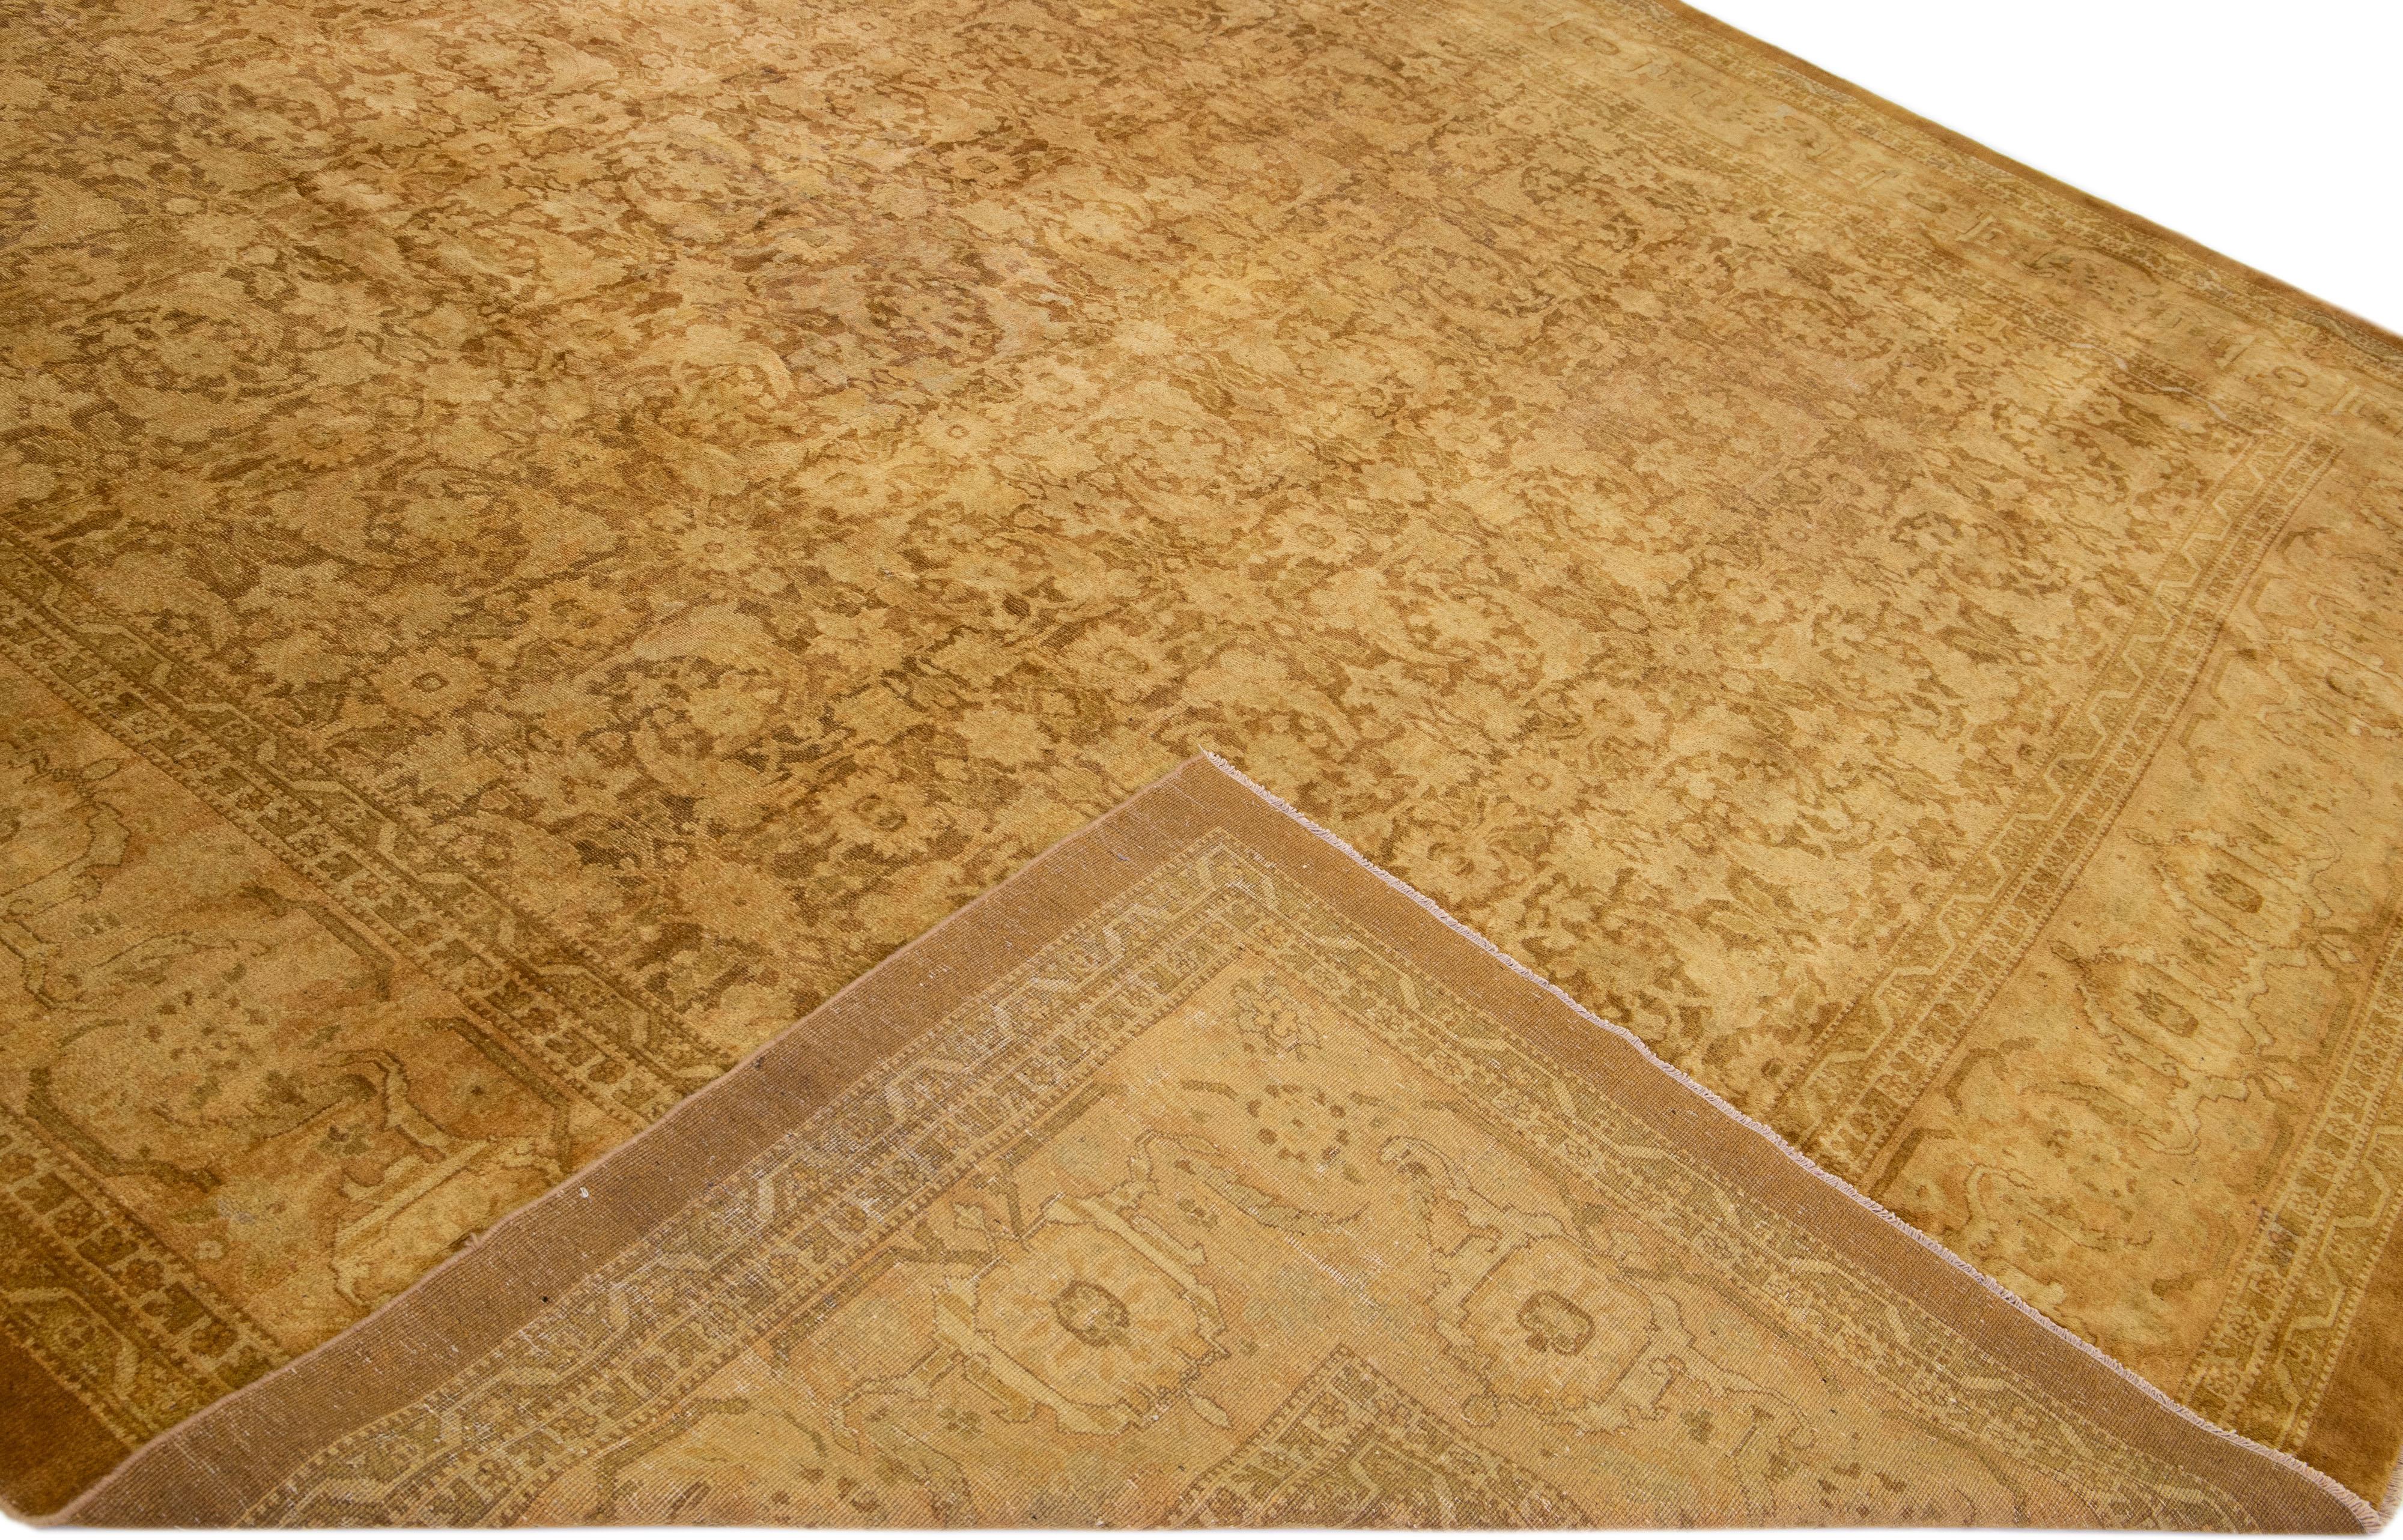 Magnifique tapis antique Agra en laine nouée à la main, avec un champ beige. Ce tapis indien présente des accents bruns dans un magnifique motif floral.

Ce tapis mesure : 13' x 16'9''.